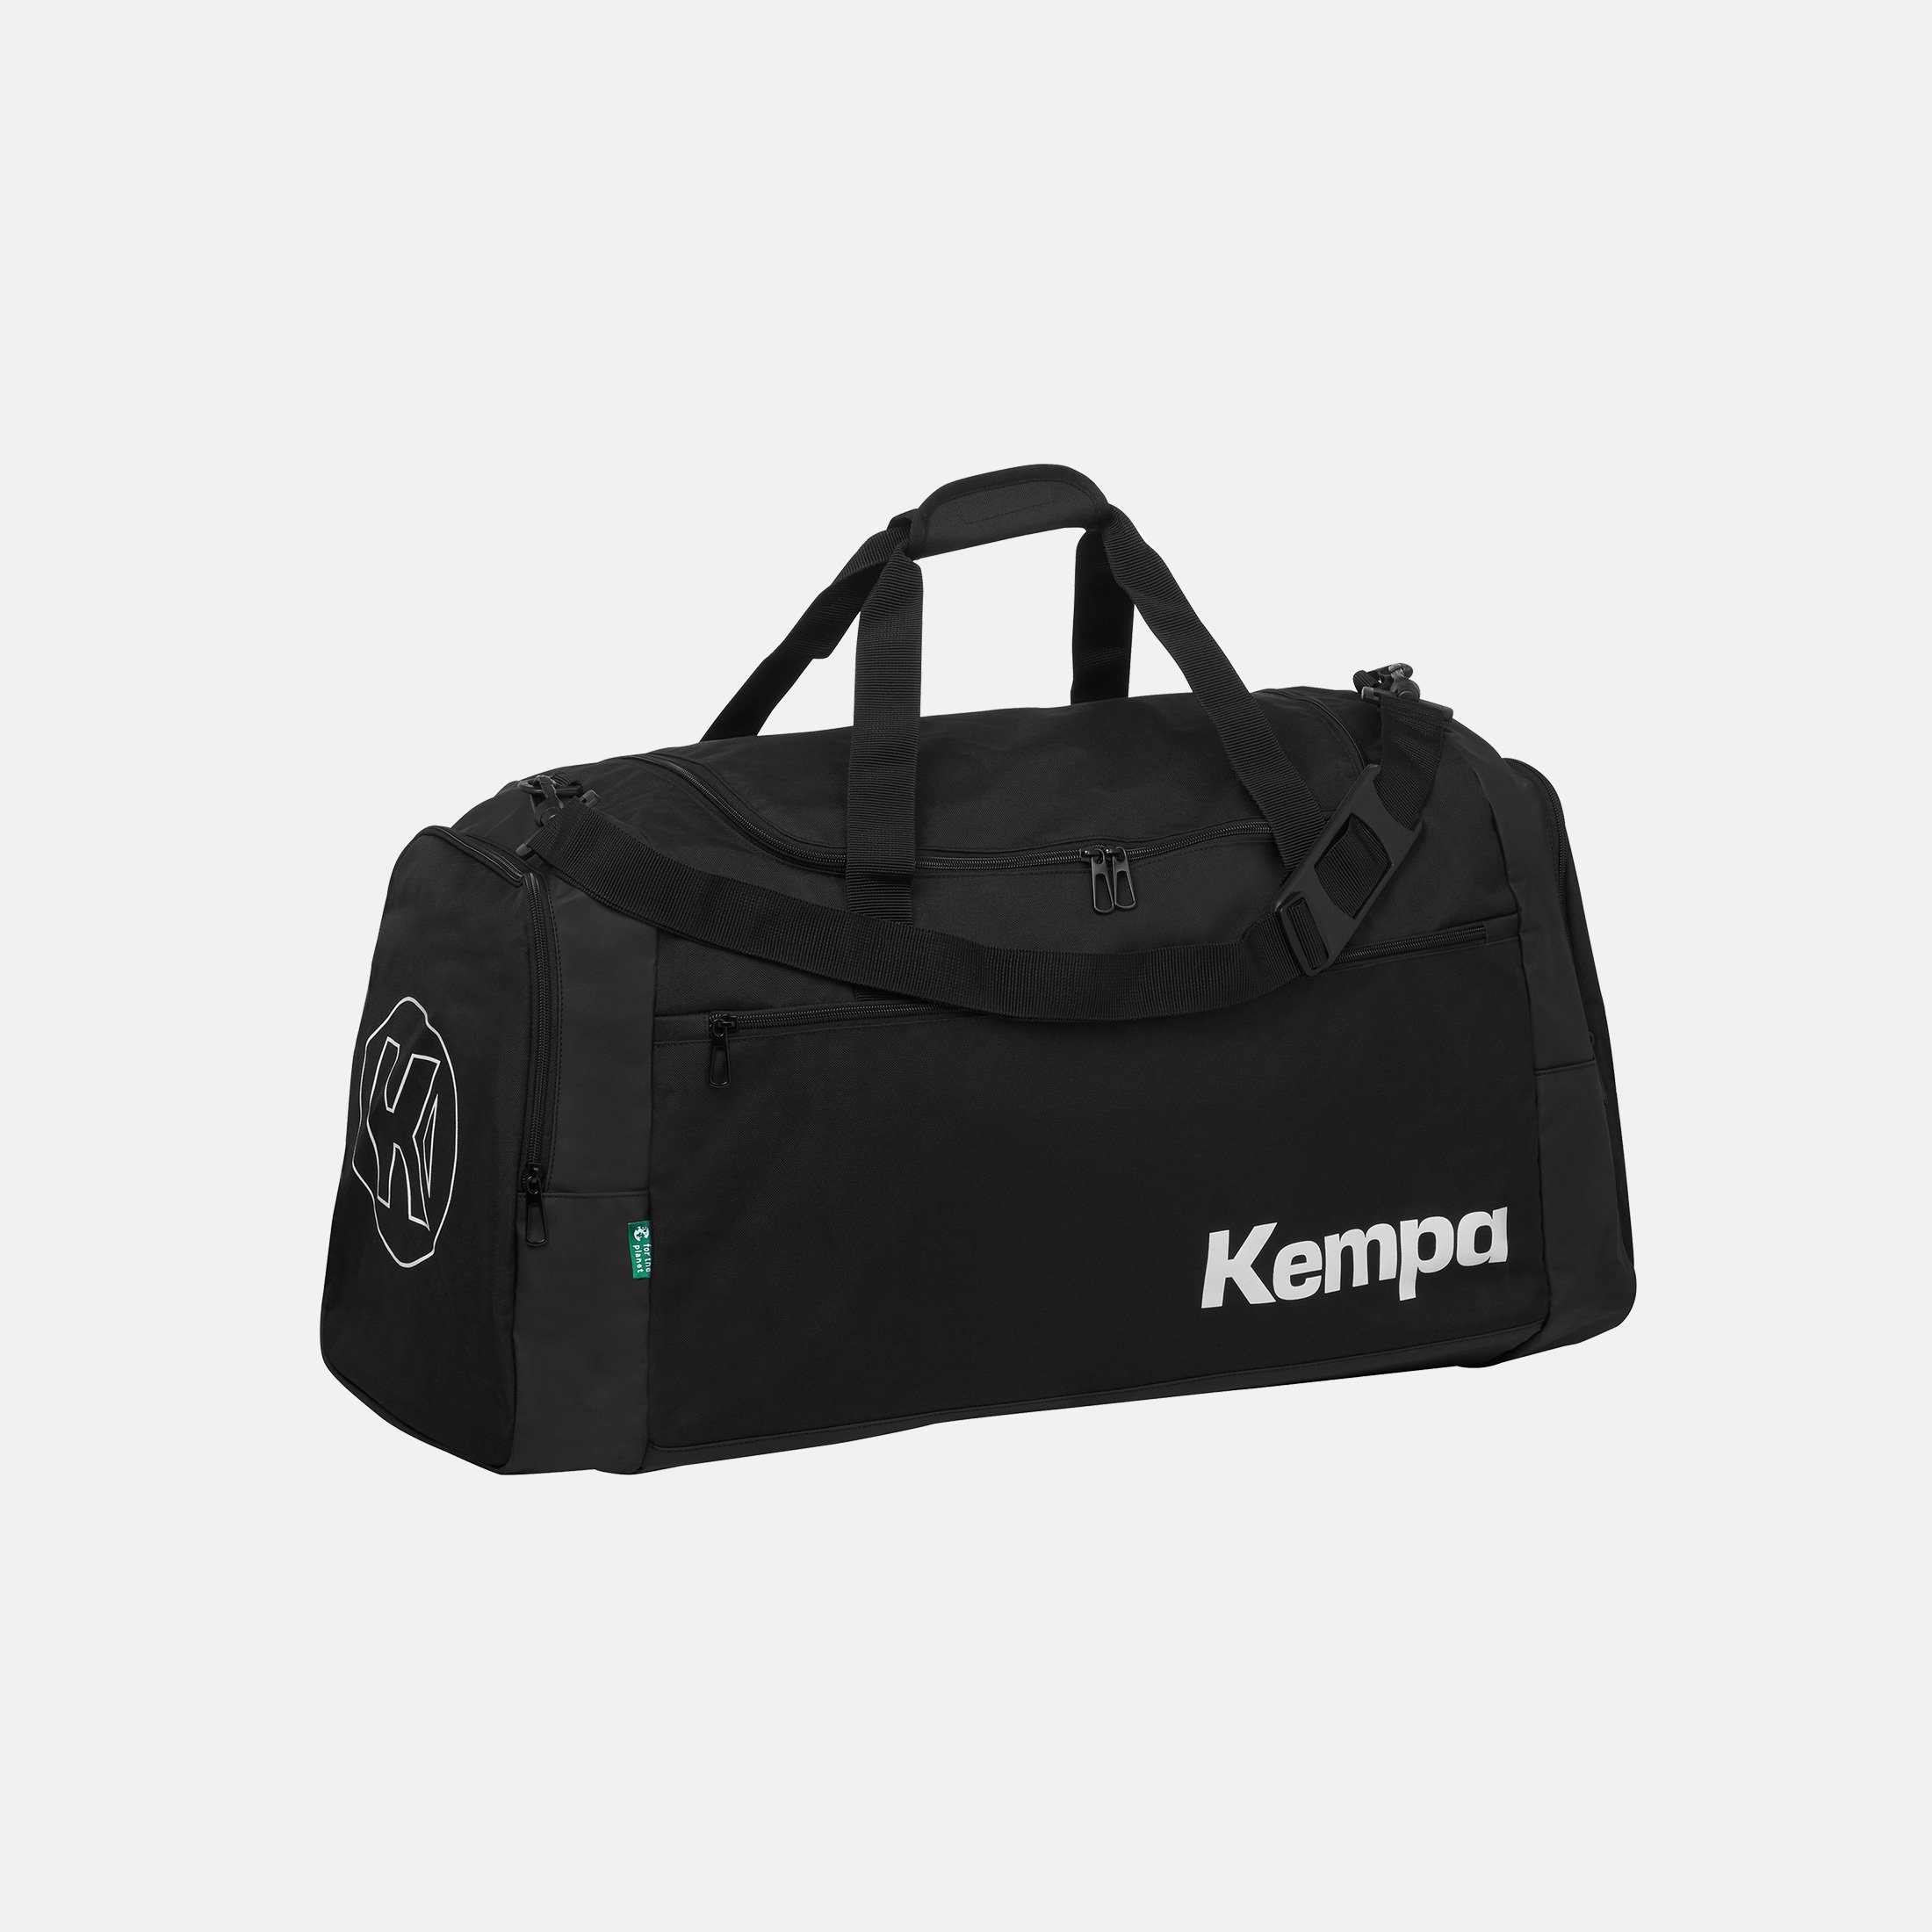 Kempa Handballtaschen online kaufen | OTTO